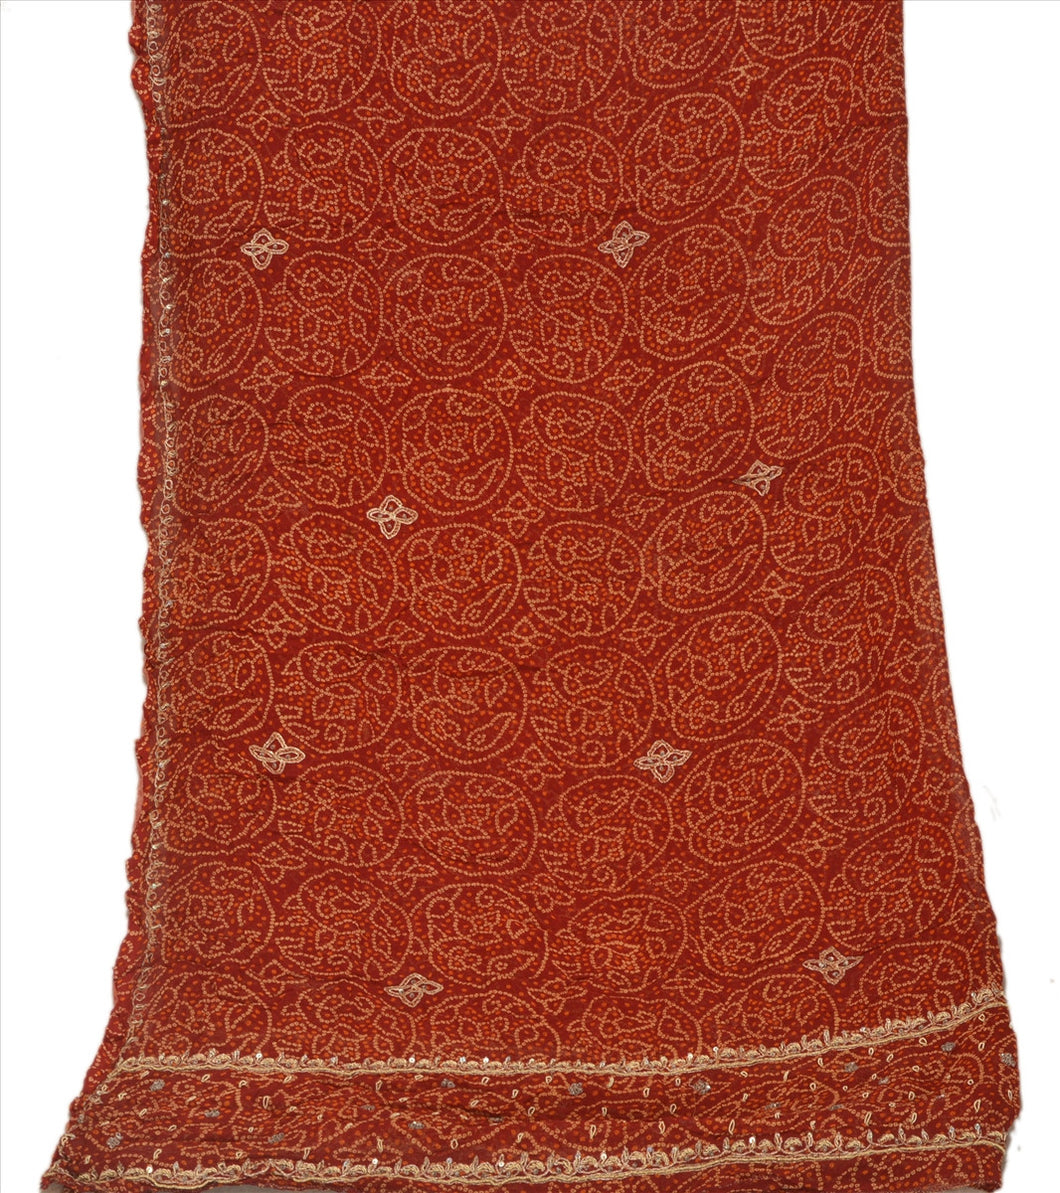 Sanskriti Vintage Dupatta Long Stole Cotton Maroon Scarves Hand Beaded Hijab